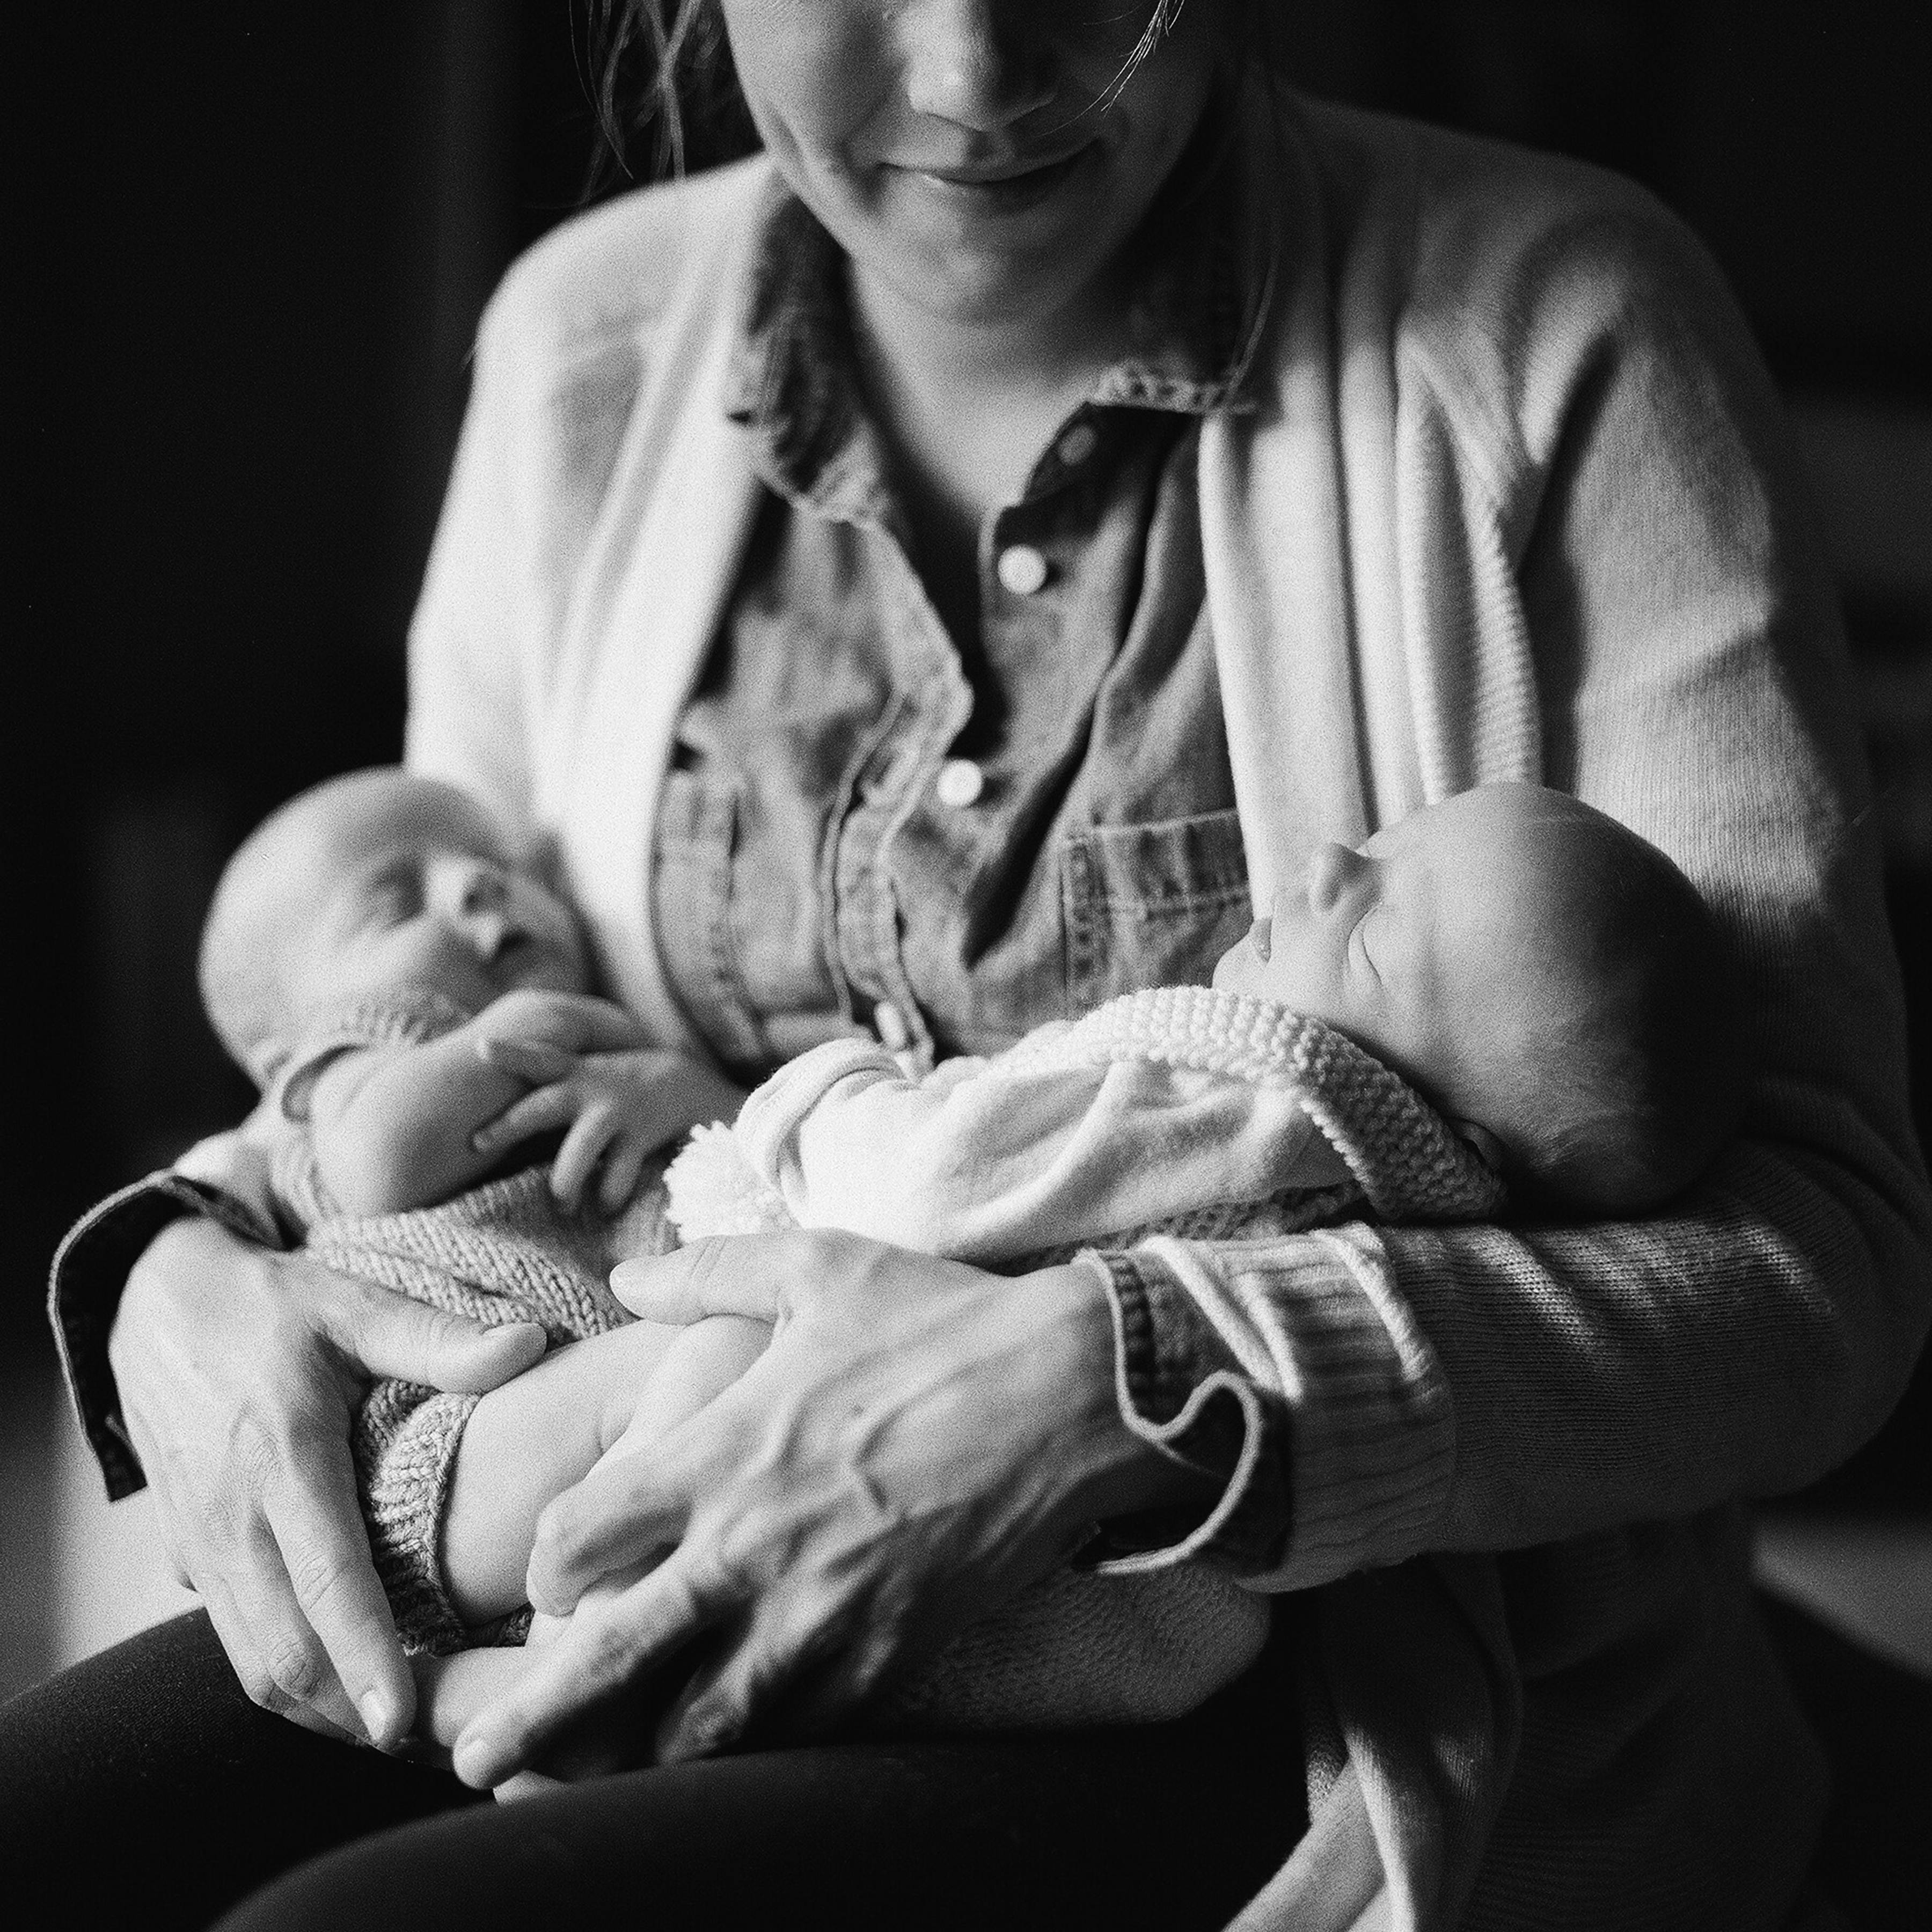 Upper Saint Clair and South Hills Pittsburgh Newborn Photographer Tiffany Farley, https://www.tiffanyfarley.com